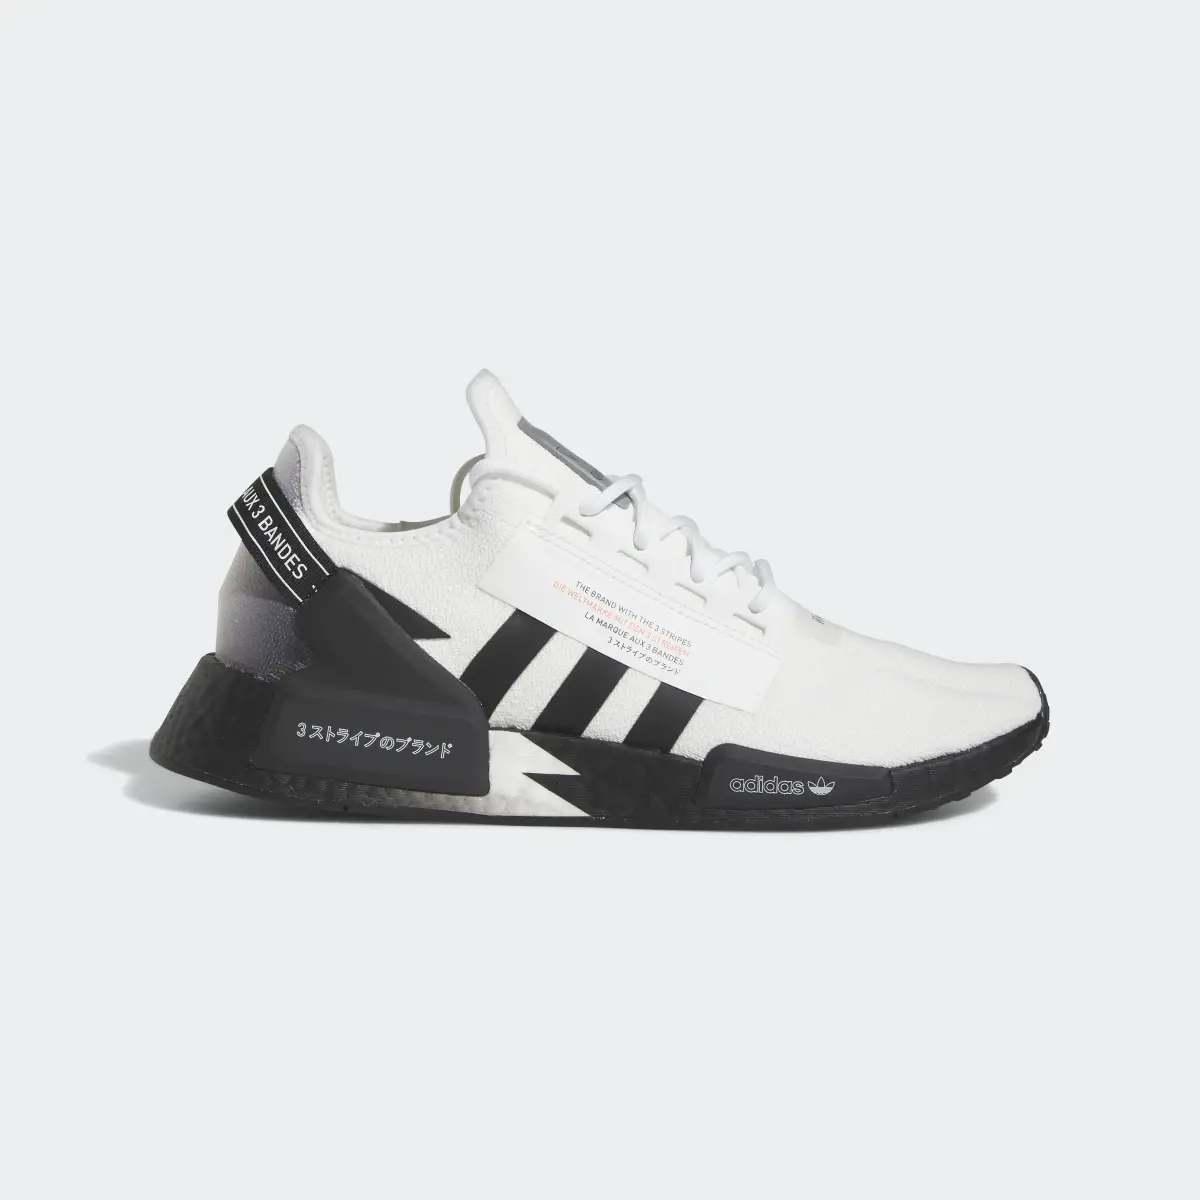 Adidas NMD_R1 V2 Shoes. 2